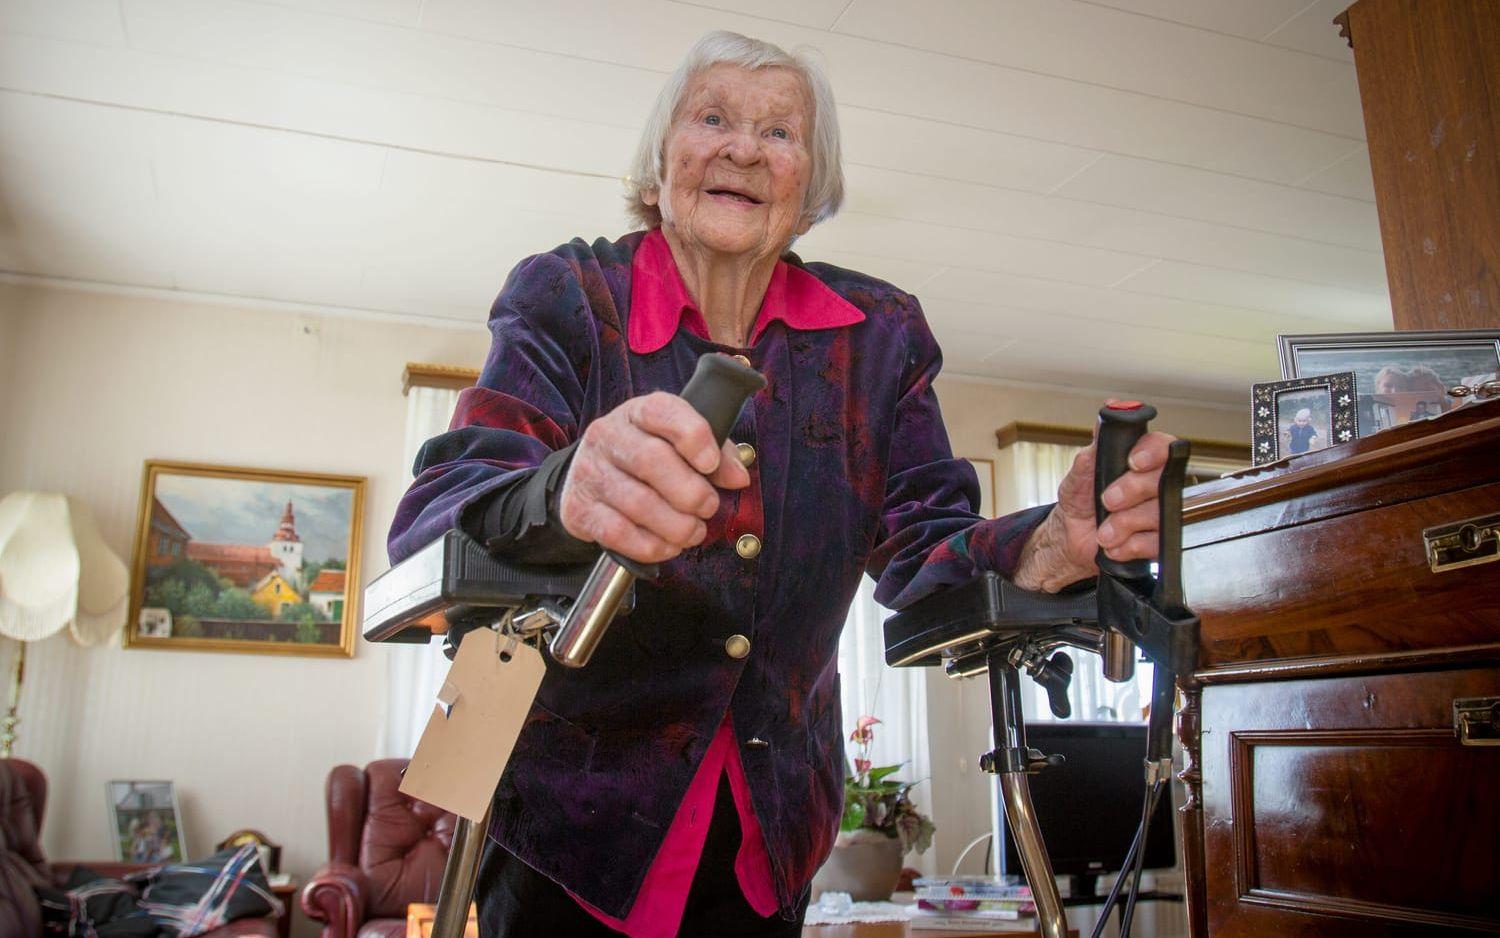 Skrämde bort tjuven. Märta Bjertin, 97 år, fick fatt i rollatorn och jagade inbrottstjuven på flykten. ”Det kunde varit värre” konstaterar hon så här i efterhand. Bild: Jonatan Gernes